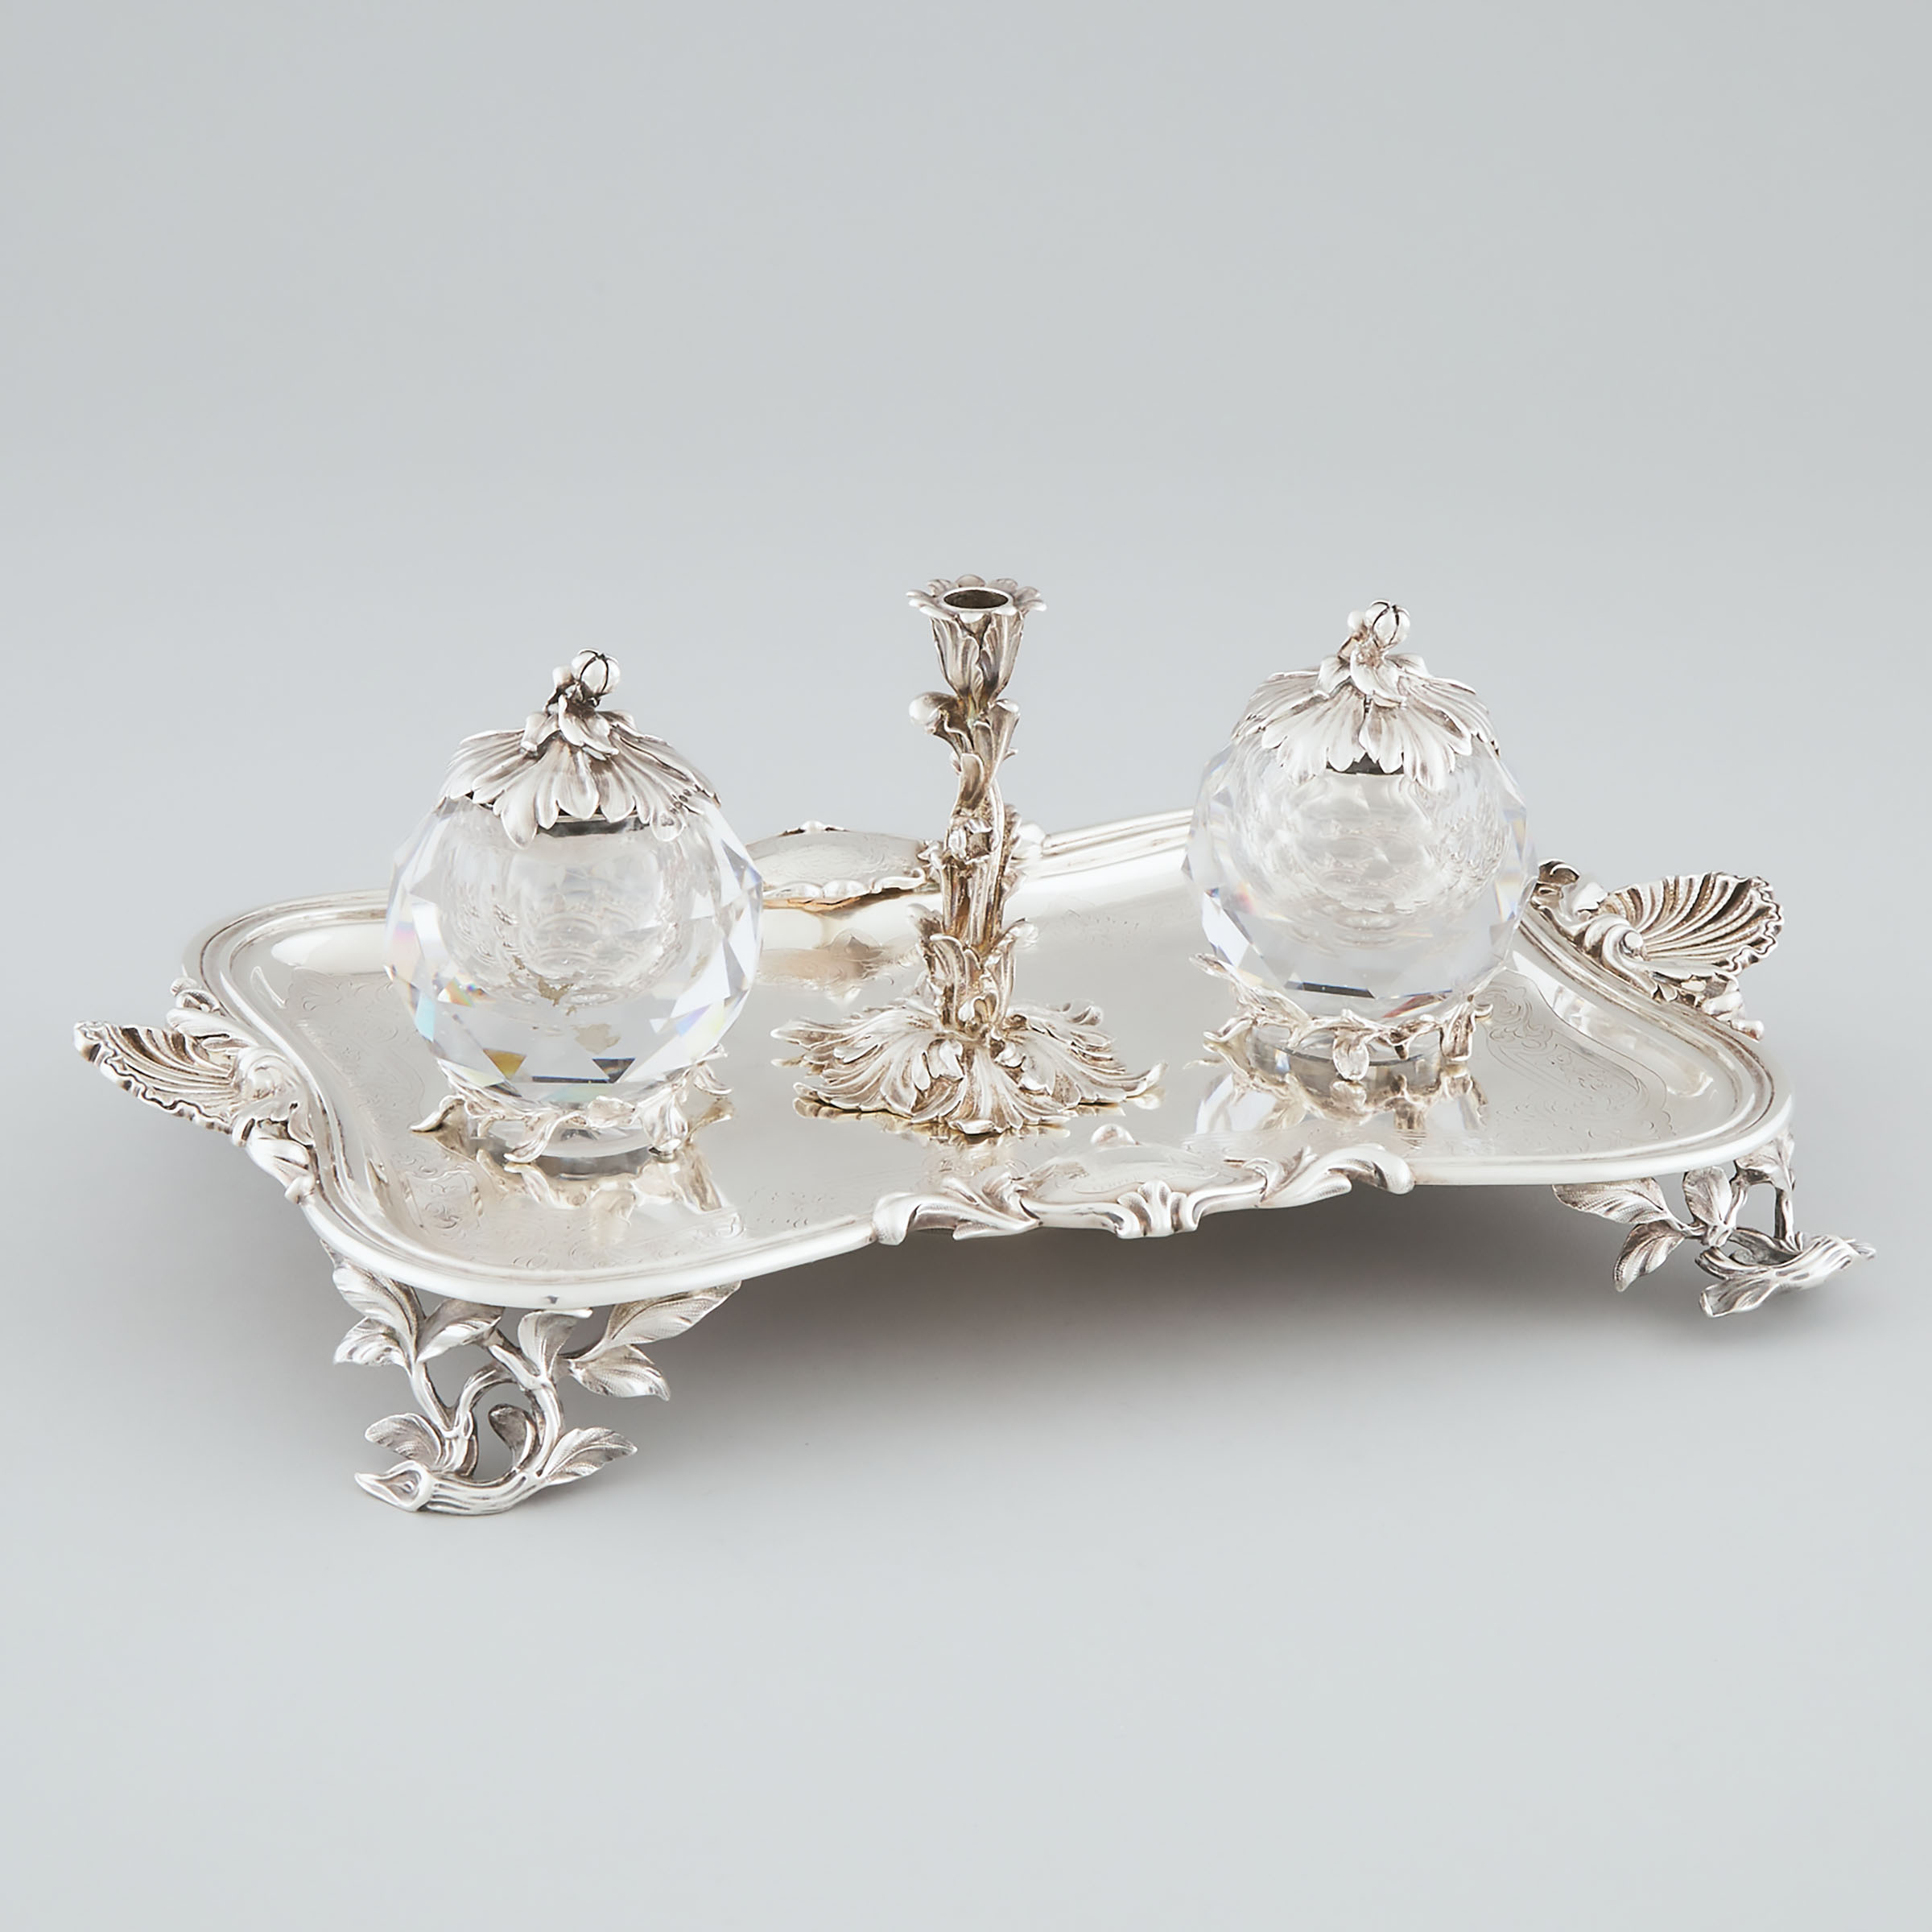 Victorian Silver and Cut Glass Inkstand, Edward, Edward, John & William Barnard, London, 1842